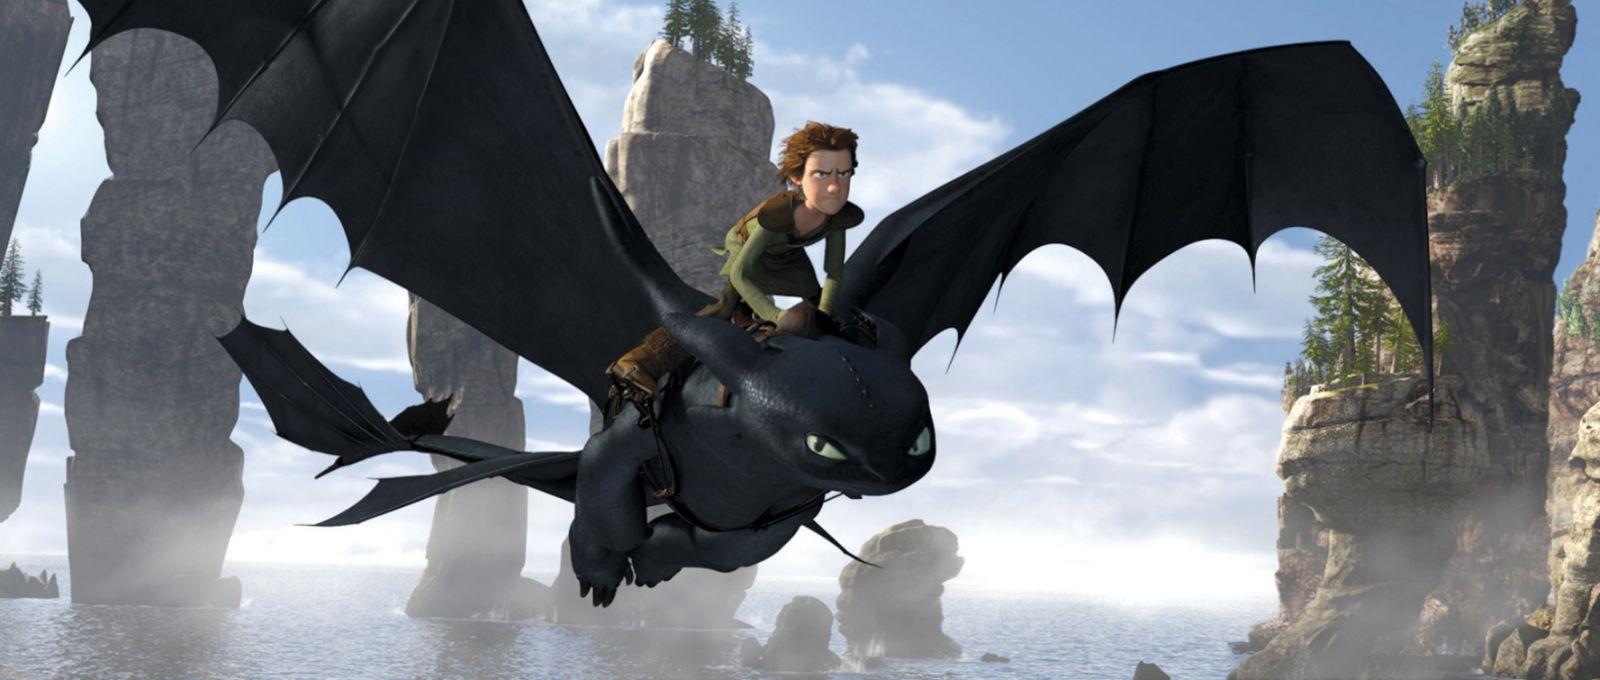 13 лучших драконов в кино и на ТВ (14 фото)